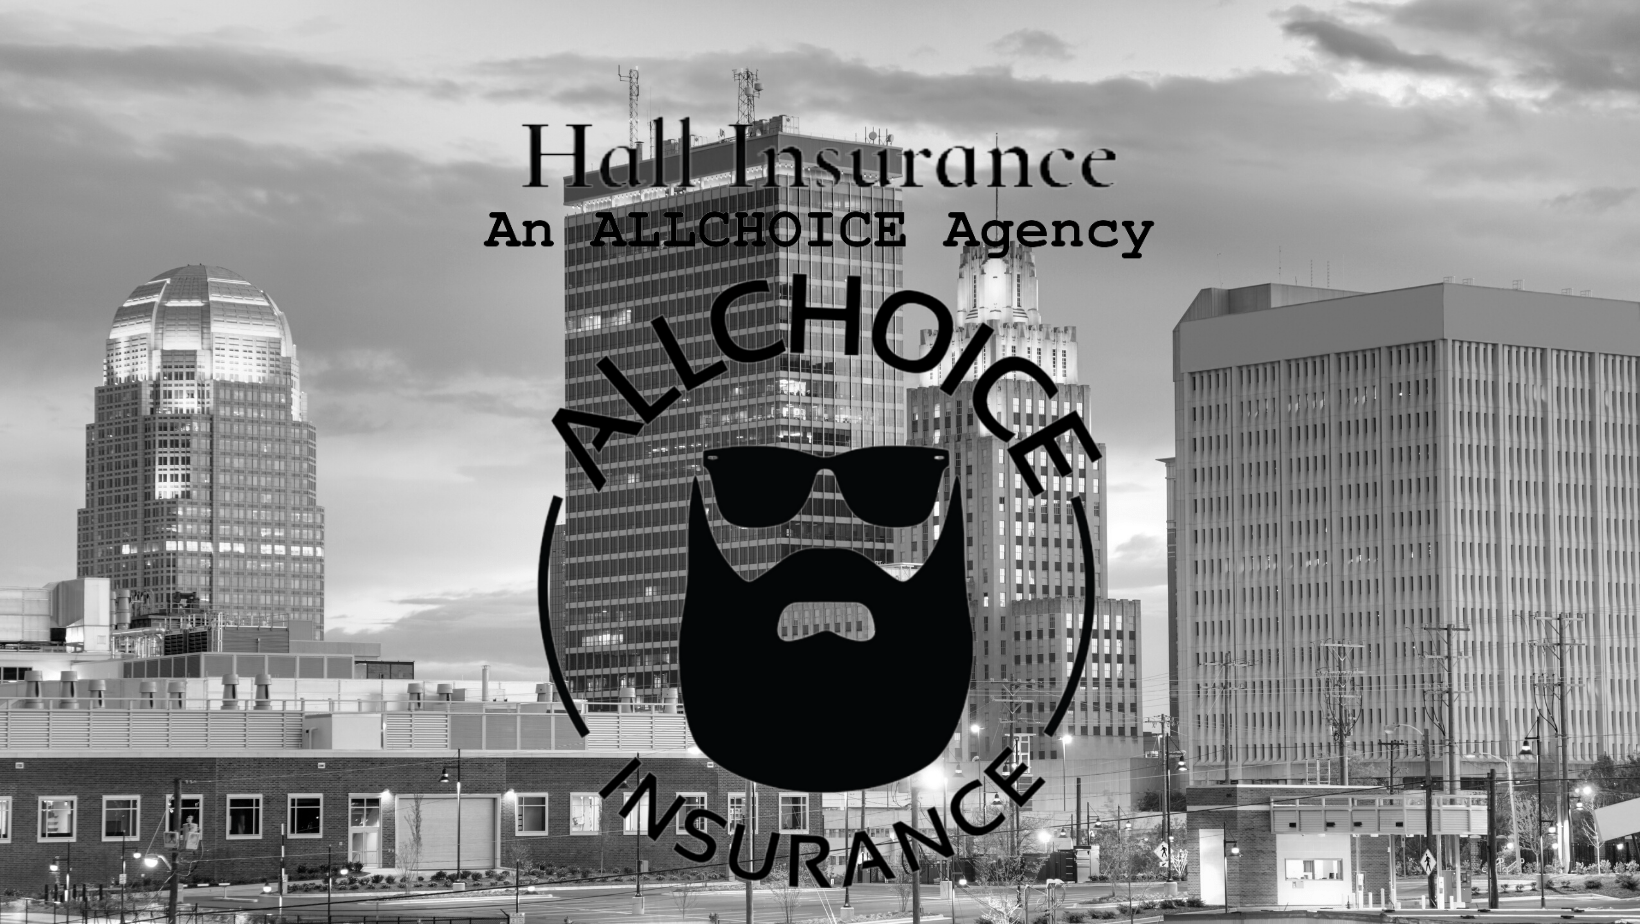 Hall Insurance, An ALLCHOICE Agency